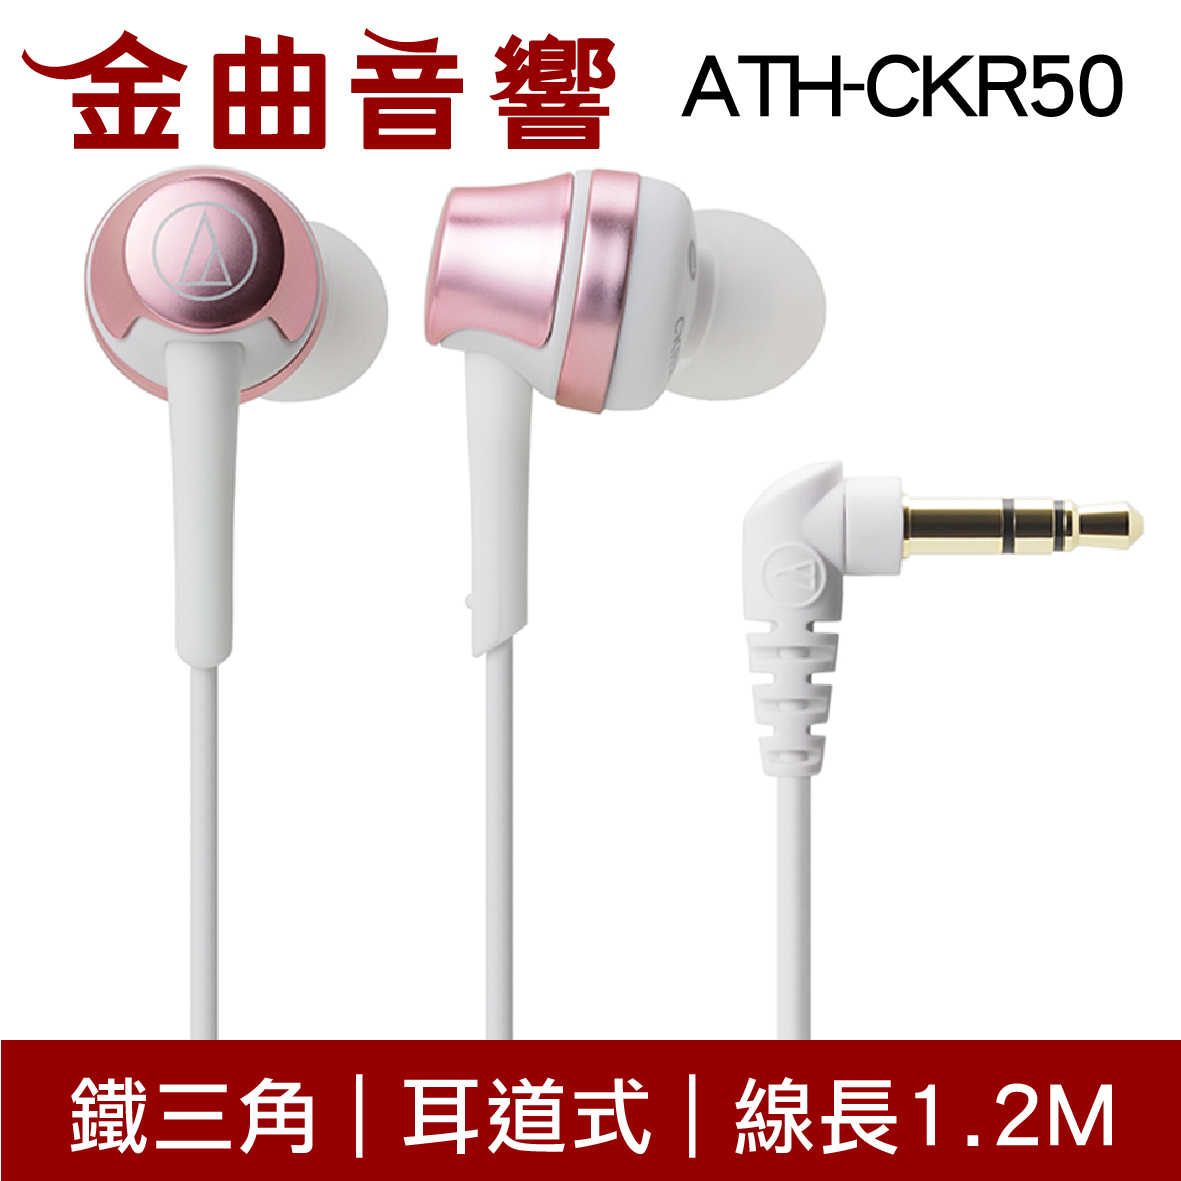 鐵三角 ATH-CKR50 紅色 耳道式耳機 | 金曲音響